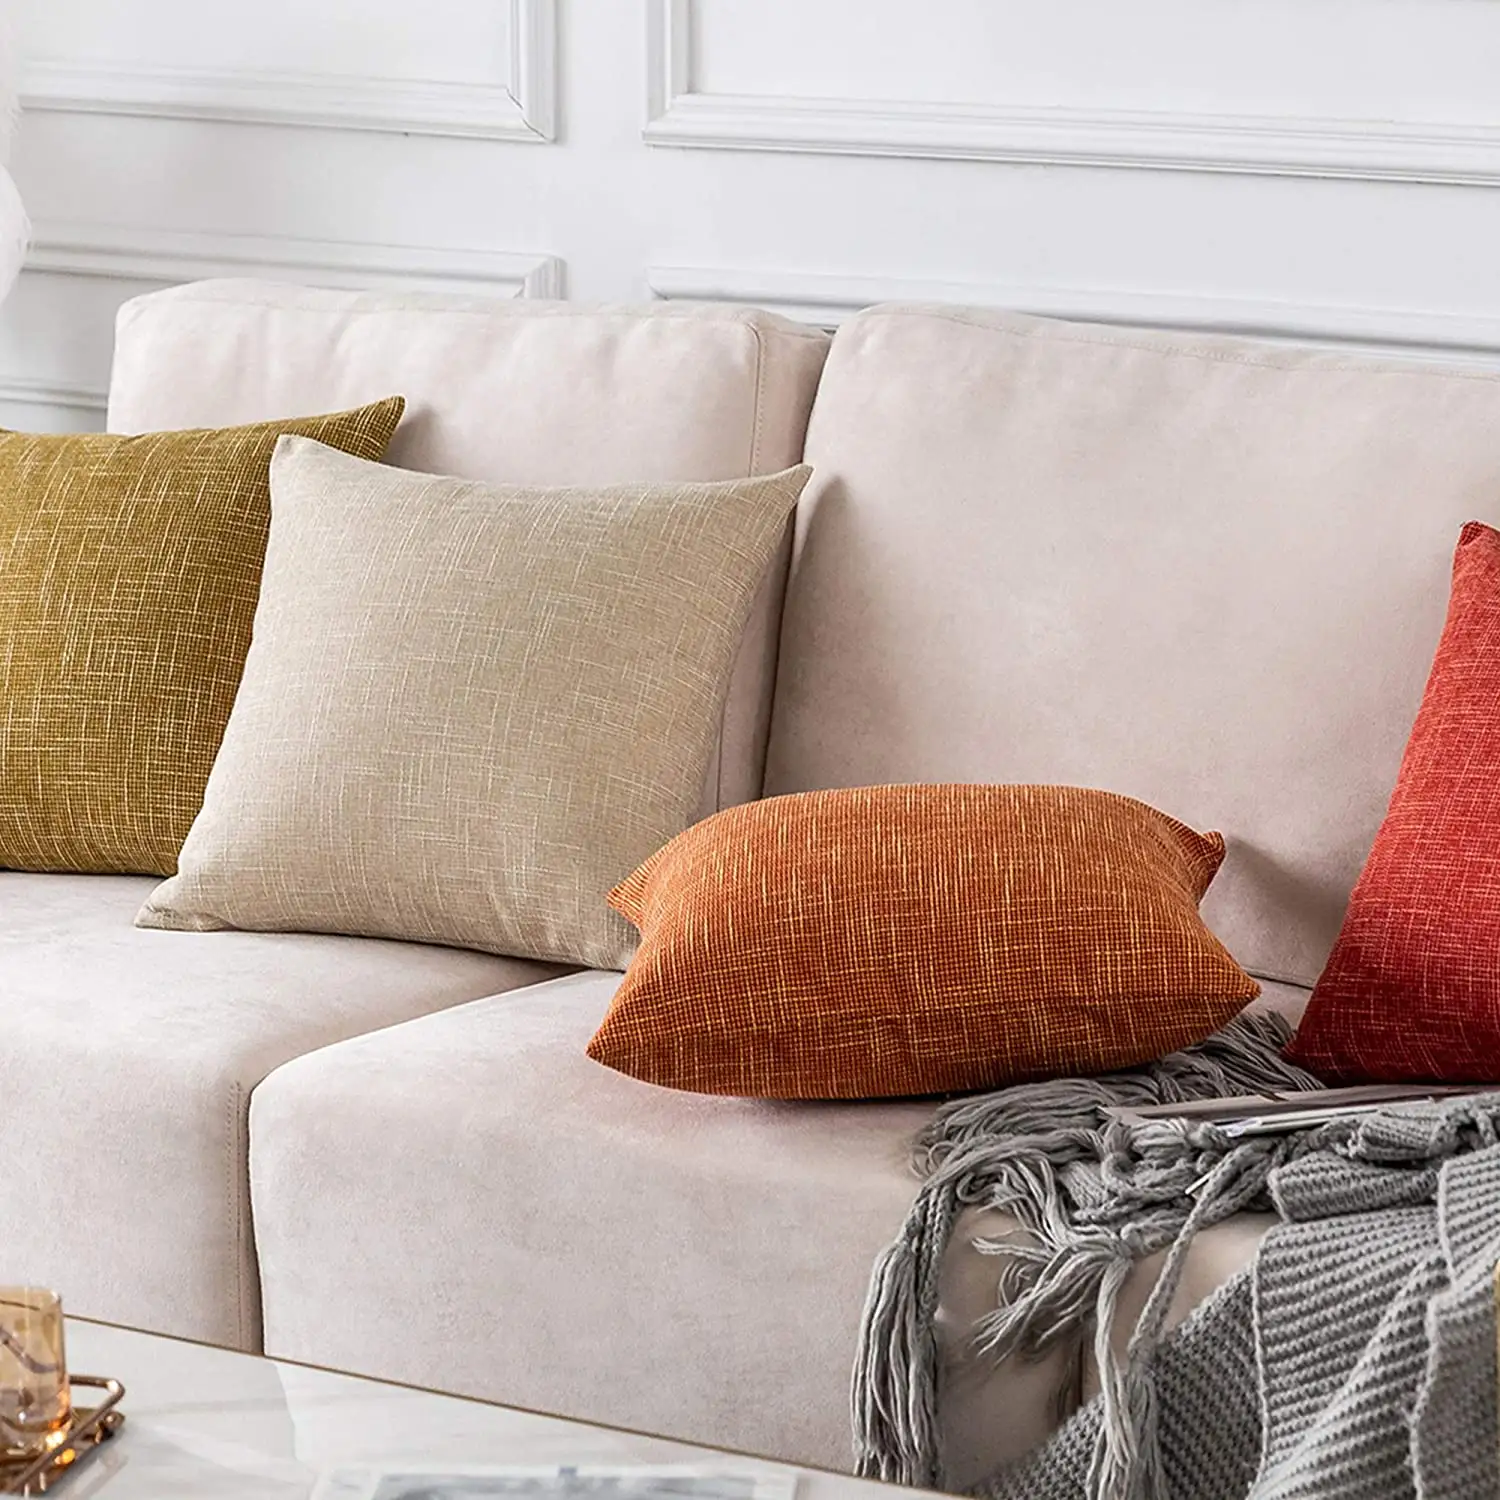 Пользовательские печати дома декоративные сублимаций заготовок наволочки по оптовым ценам, роскошные диван диванные льняная наволочка для подушки